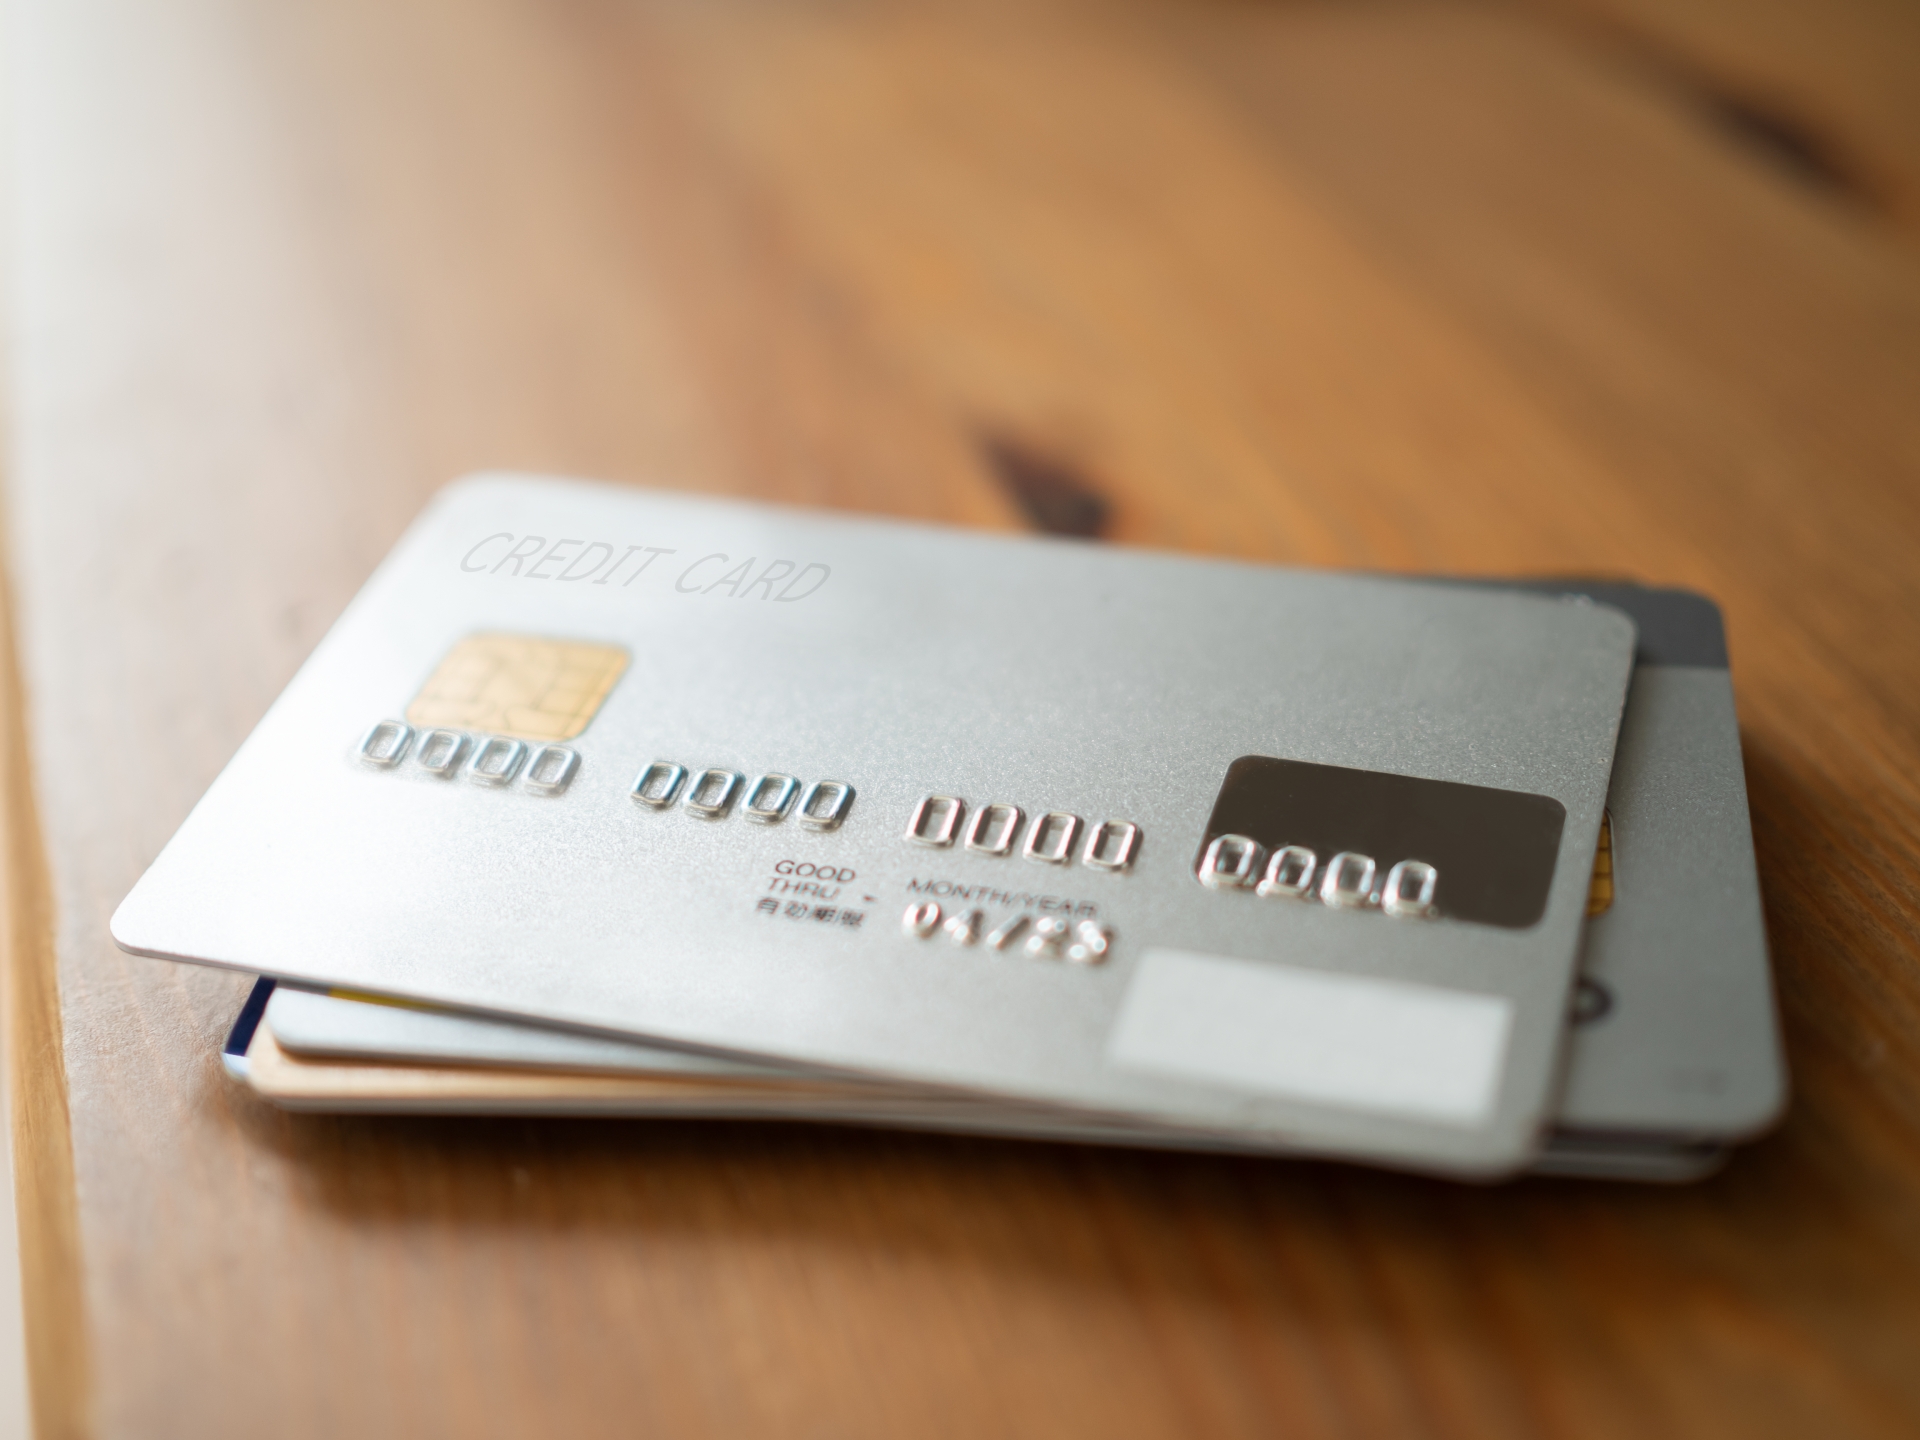 クレジットカード付帯保険の主な種類と利用の際に注意すべきポイント